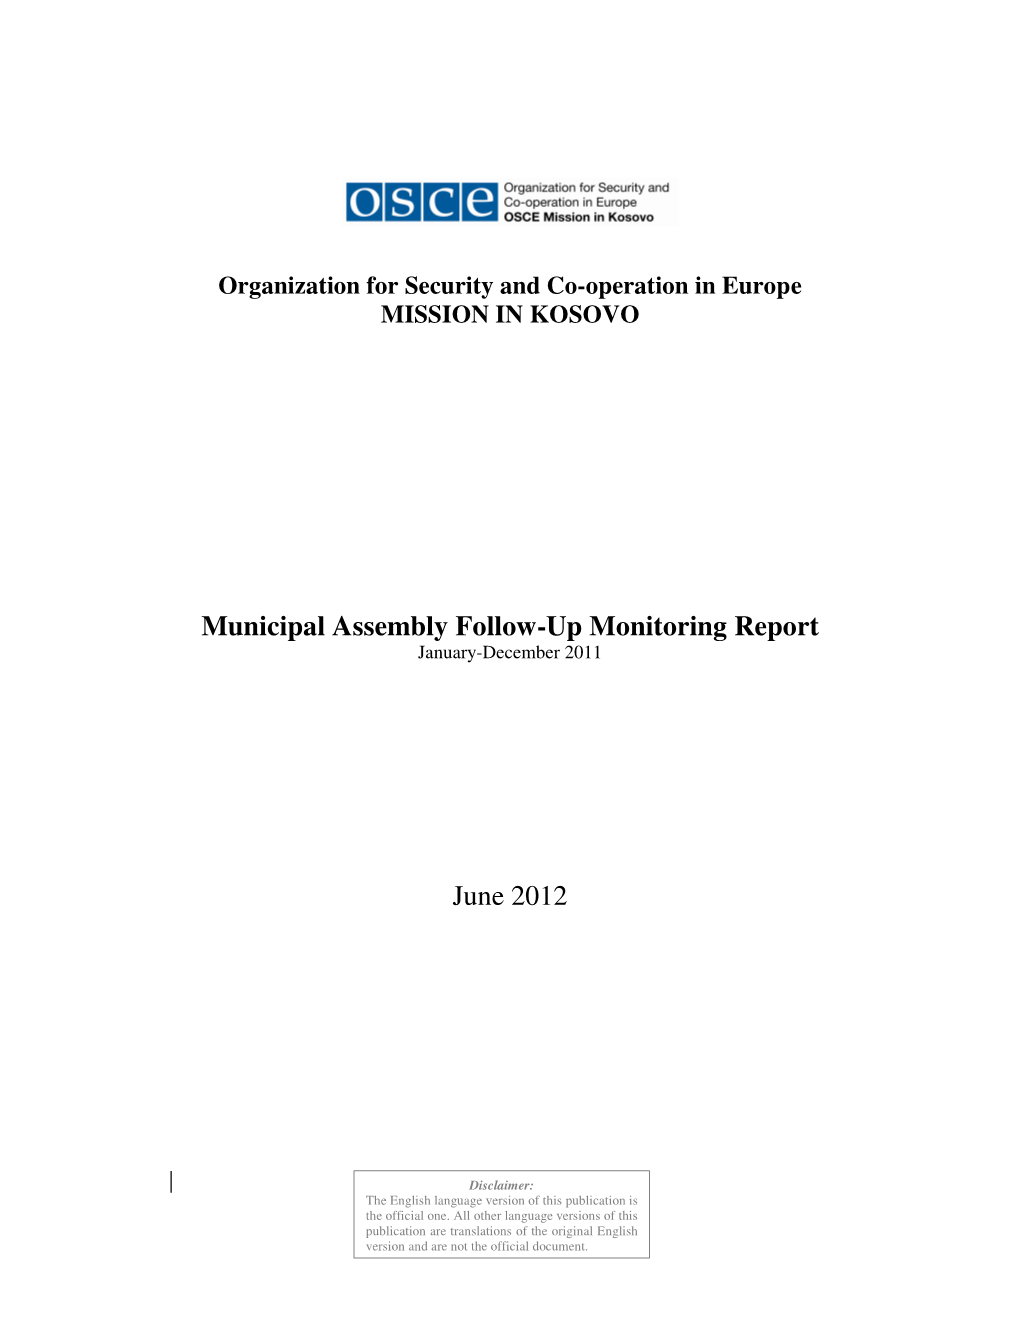 Municipal Assembly Follow-Up Monitoring Report June 2012